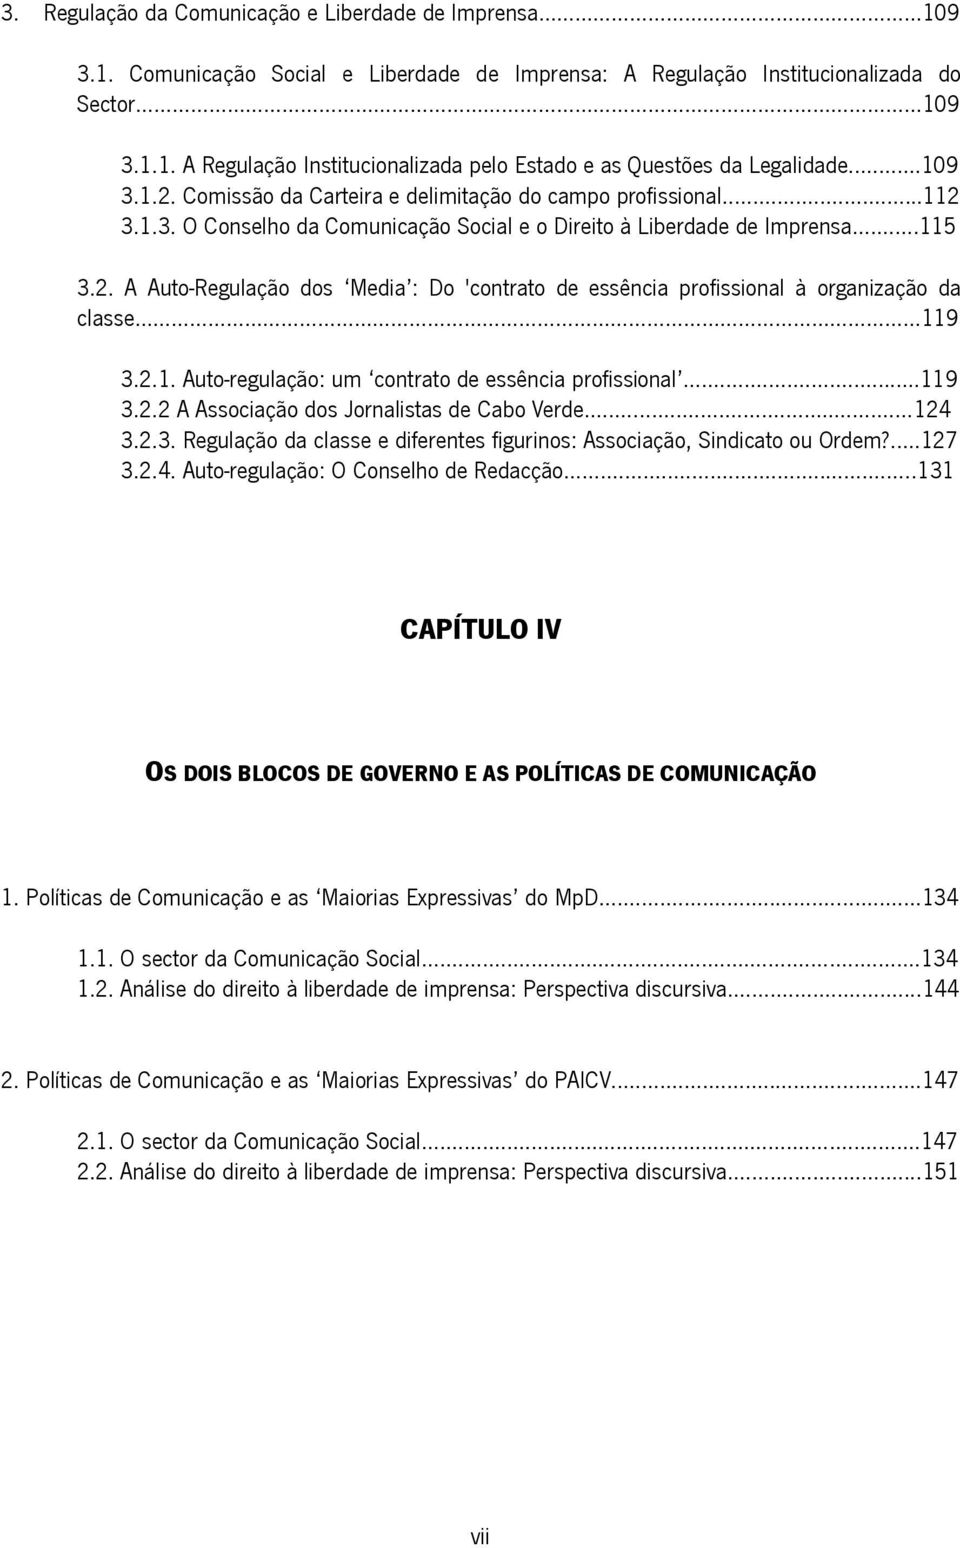 2.1. Auto-regulação: um contrato de essência profissional...119 3.2.2 A Associação dos Jornalistas de Cabo Verde...124 3.2.3. Regulação da classe e diferentes figurinos: Associação, Sindicato ou Ordem?